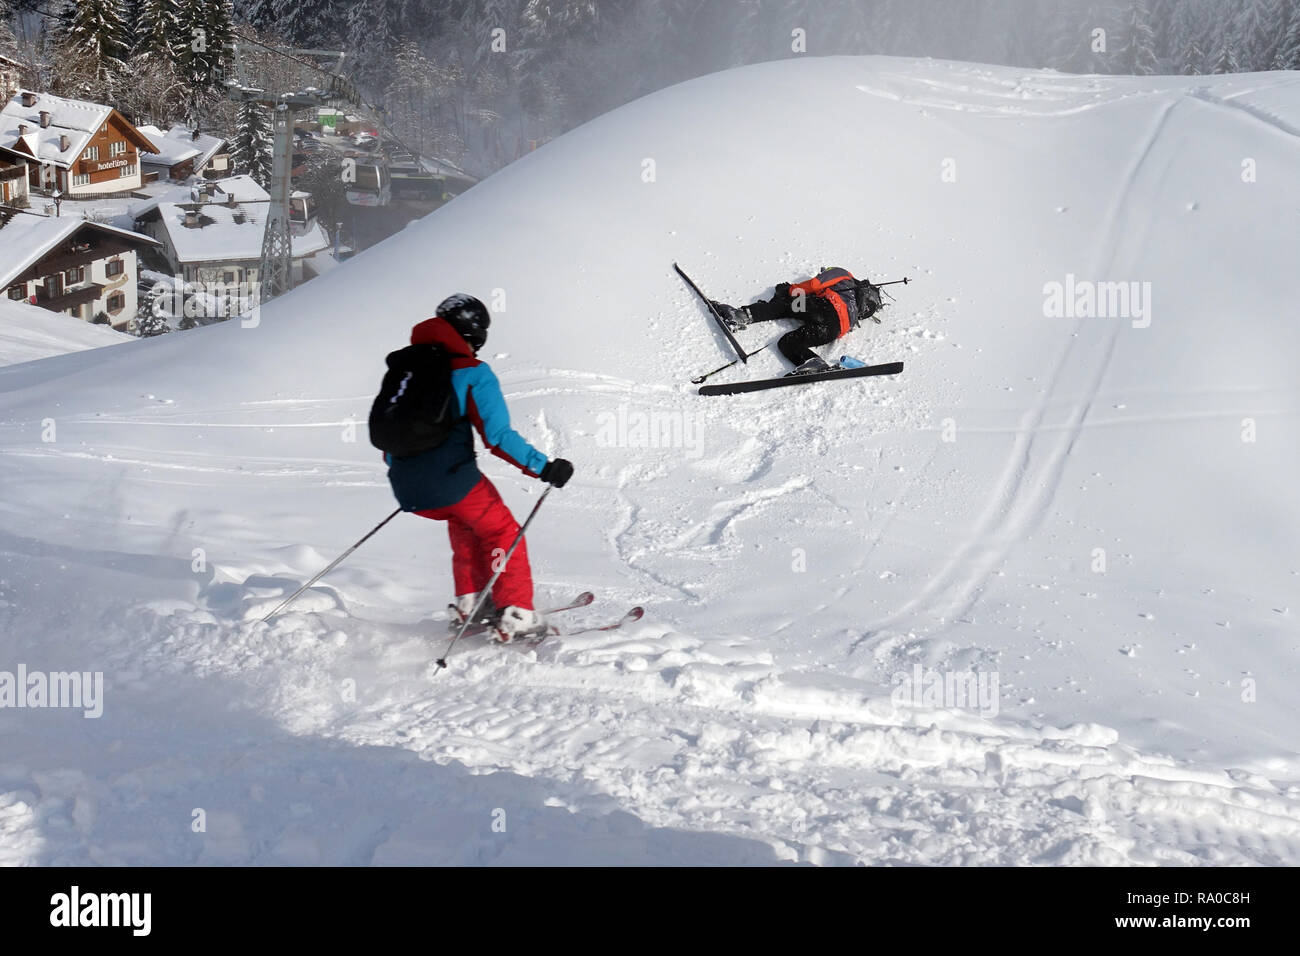 05.02.2018, Suedtirol, Reischach, Italien, Junge ist beim Skifahren gestuerzt. 00S180205D043CARO.JPG [MODEL RELEASE: YES, PROPERTY RELEASE: NOT APPLIC Stock Photo